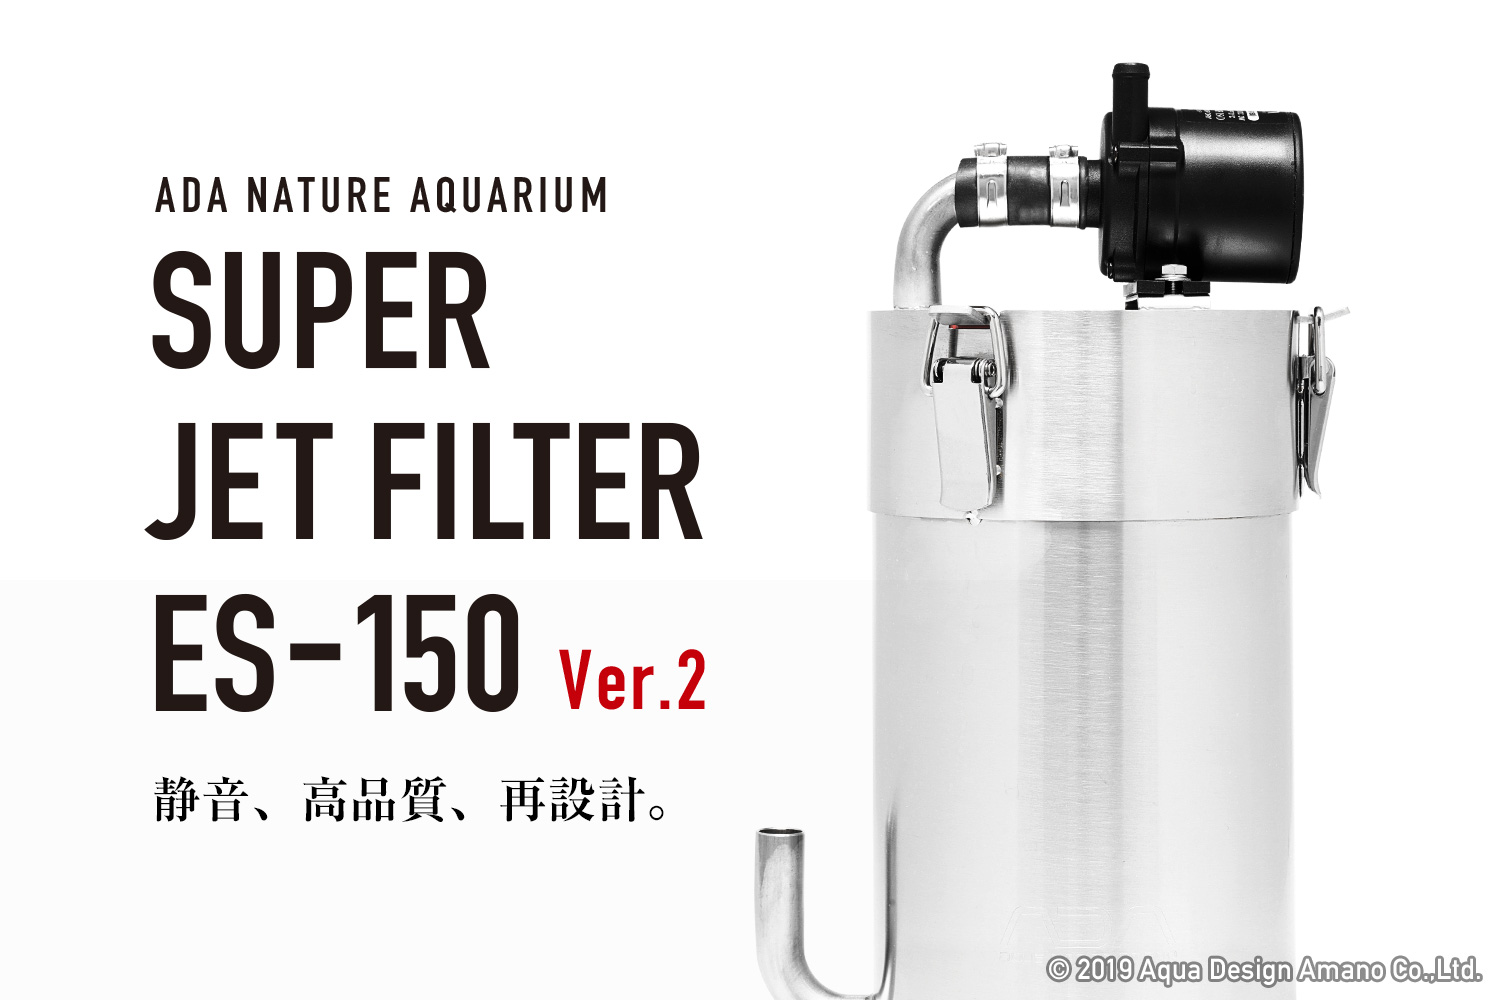 スーパージェットフィルター ES-150 Ver.2 新発売のお知らせ | ADA - NEWS RELEASE